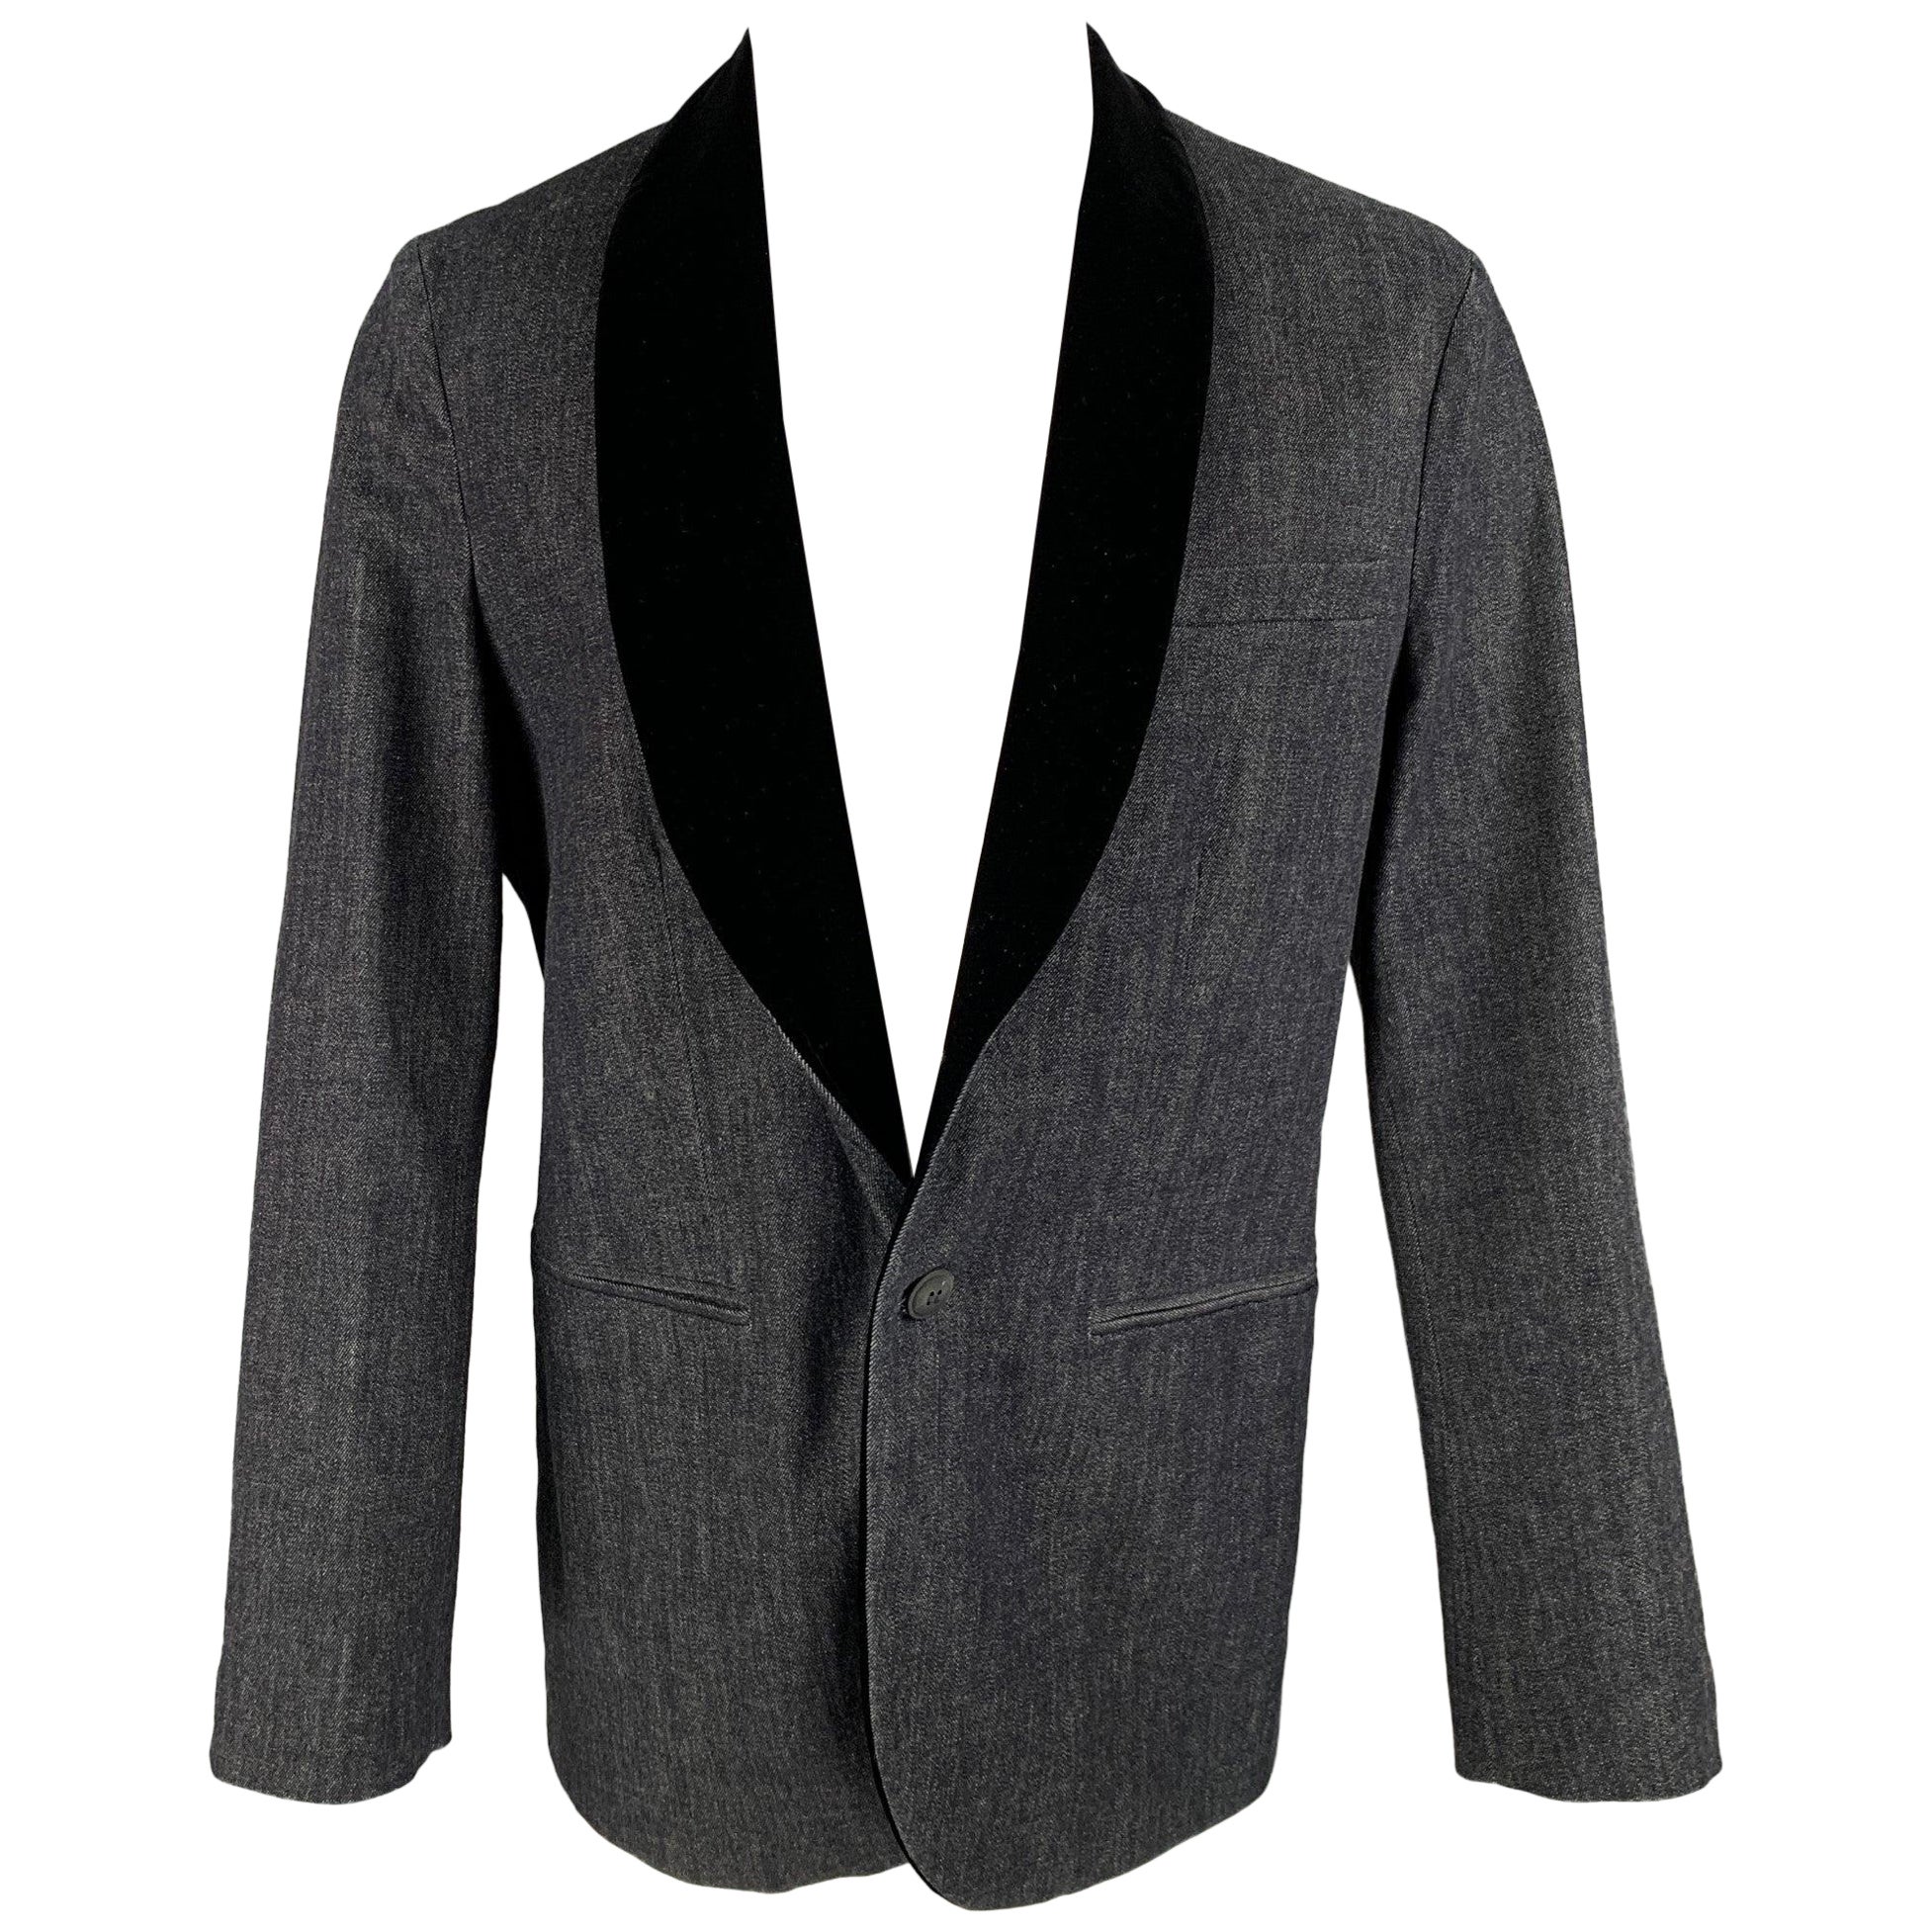 GIORGIO ARMANI Size 44 Indigo Mixed Materials Cotton Cashmere Sport Coat For Sale